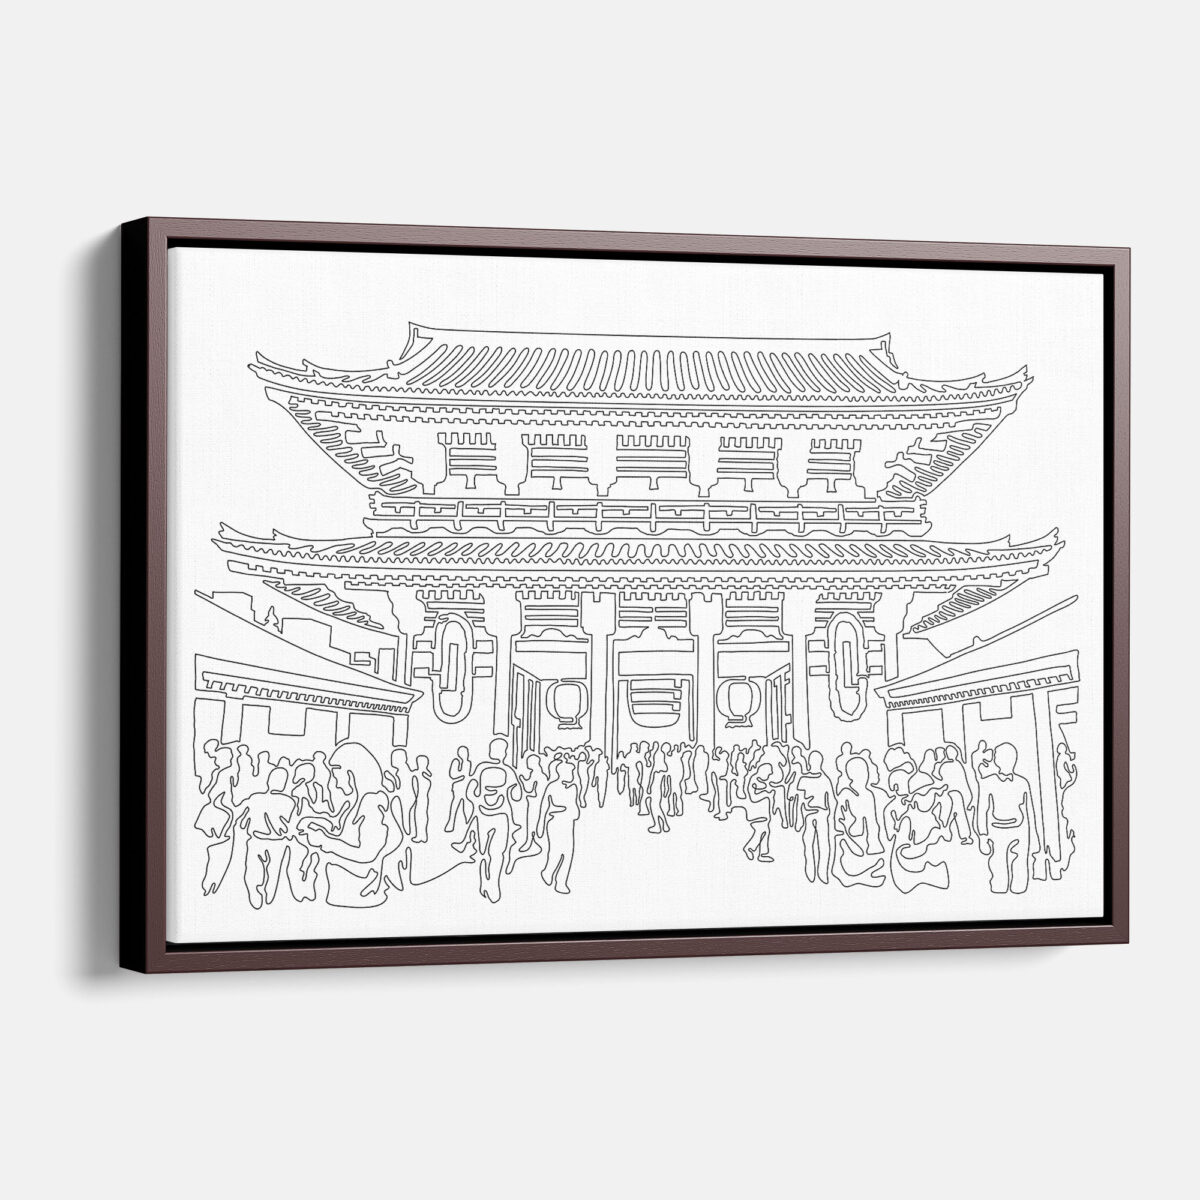 Framed Tokyo Canvas Print - Main - Light